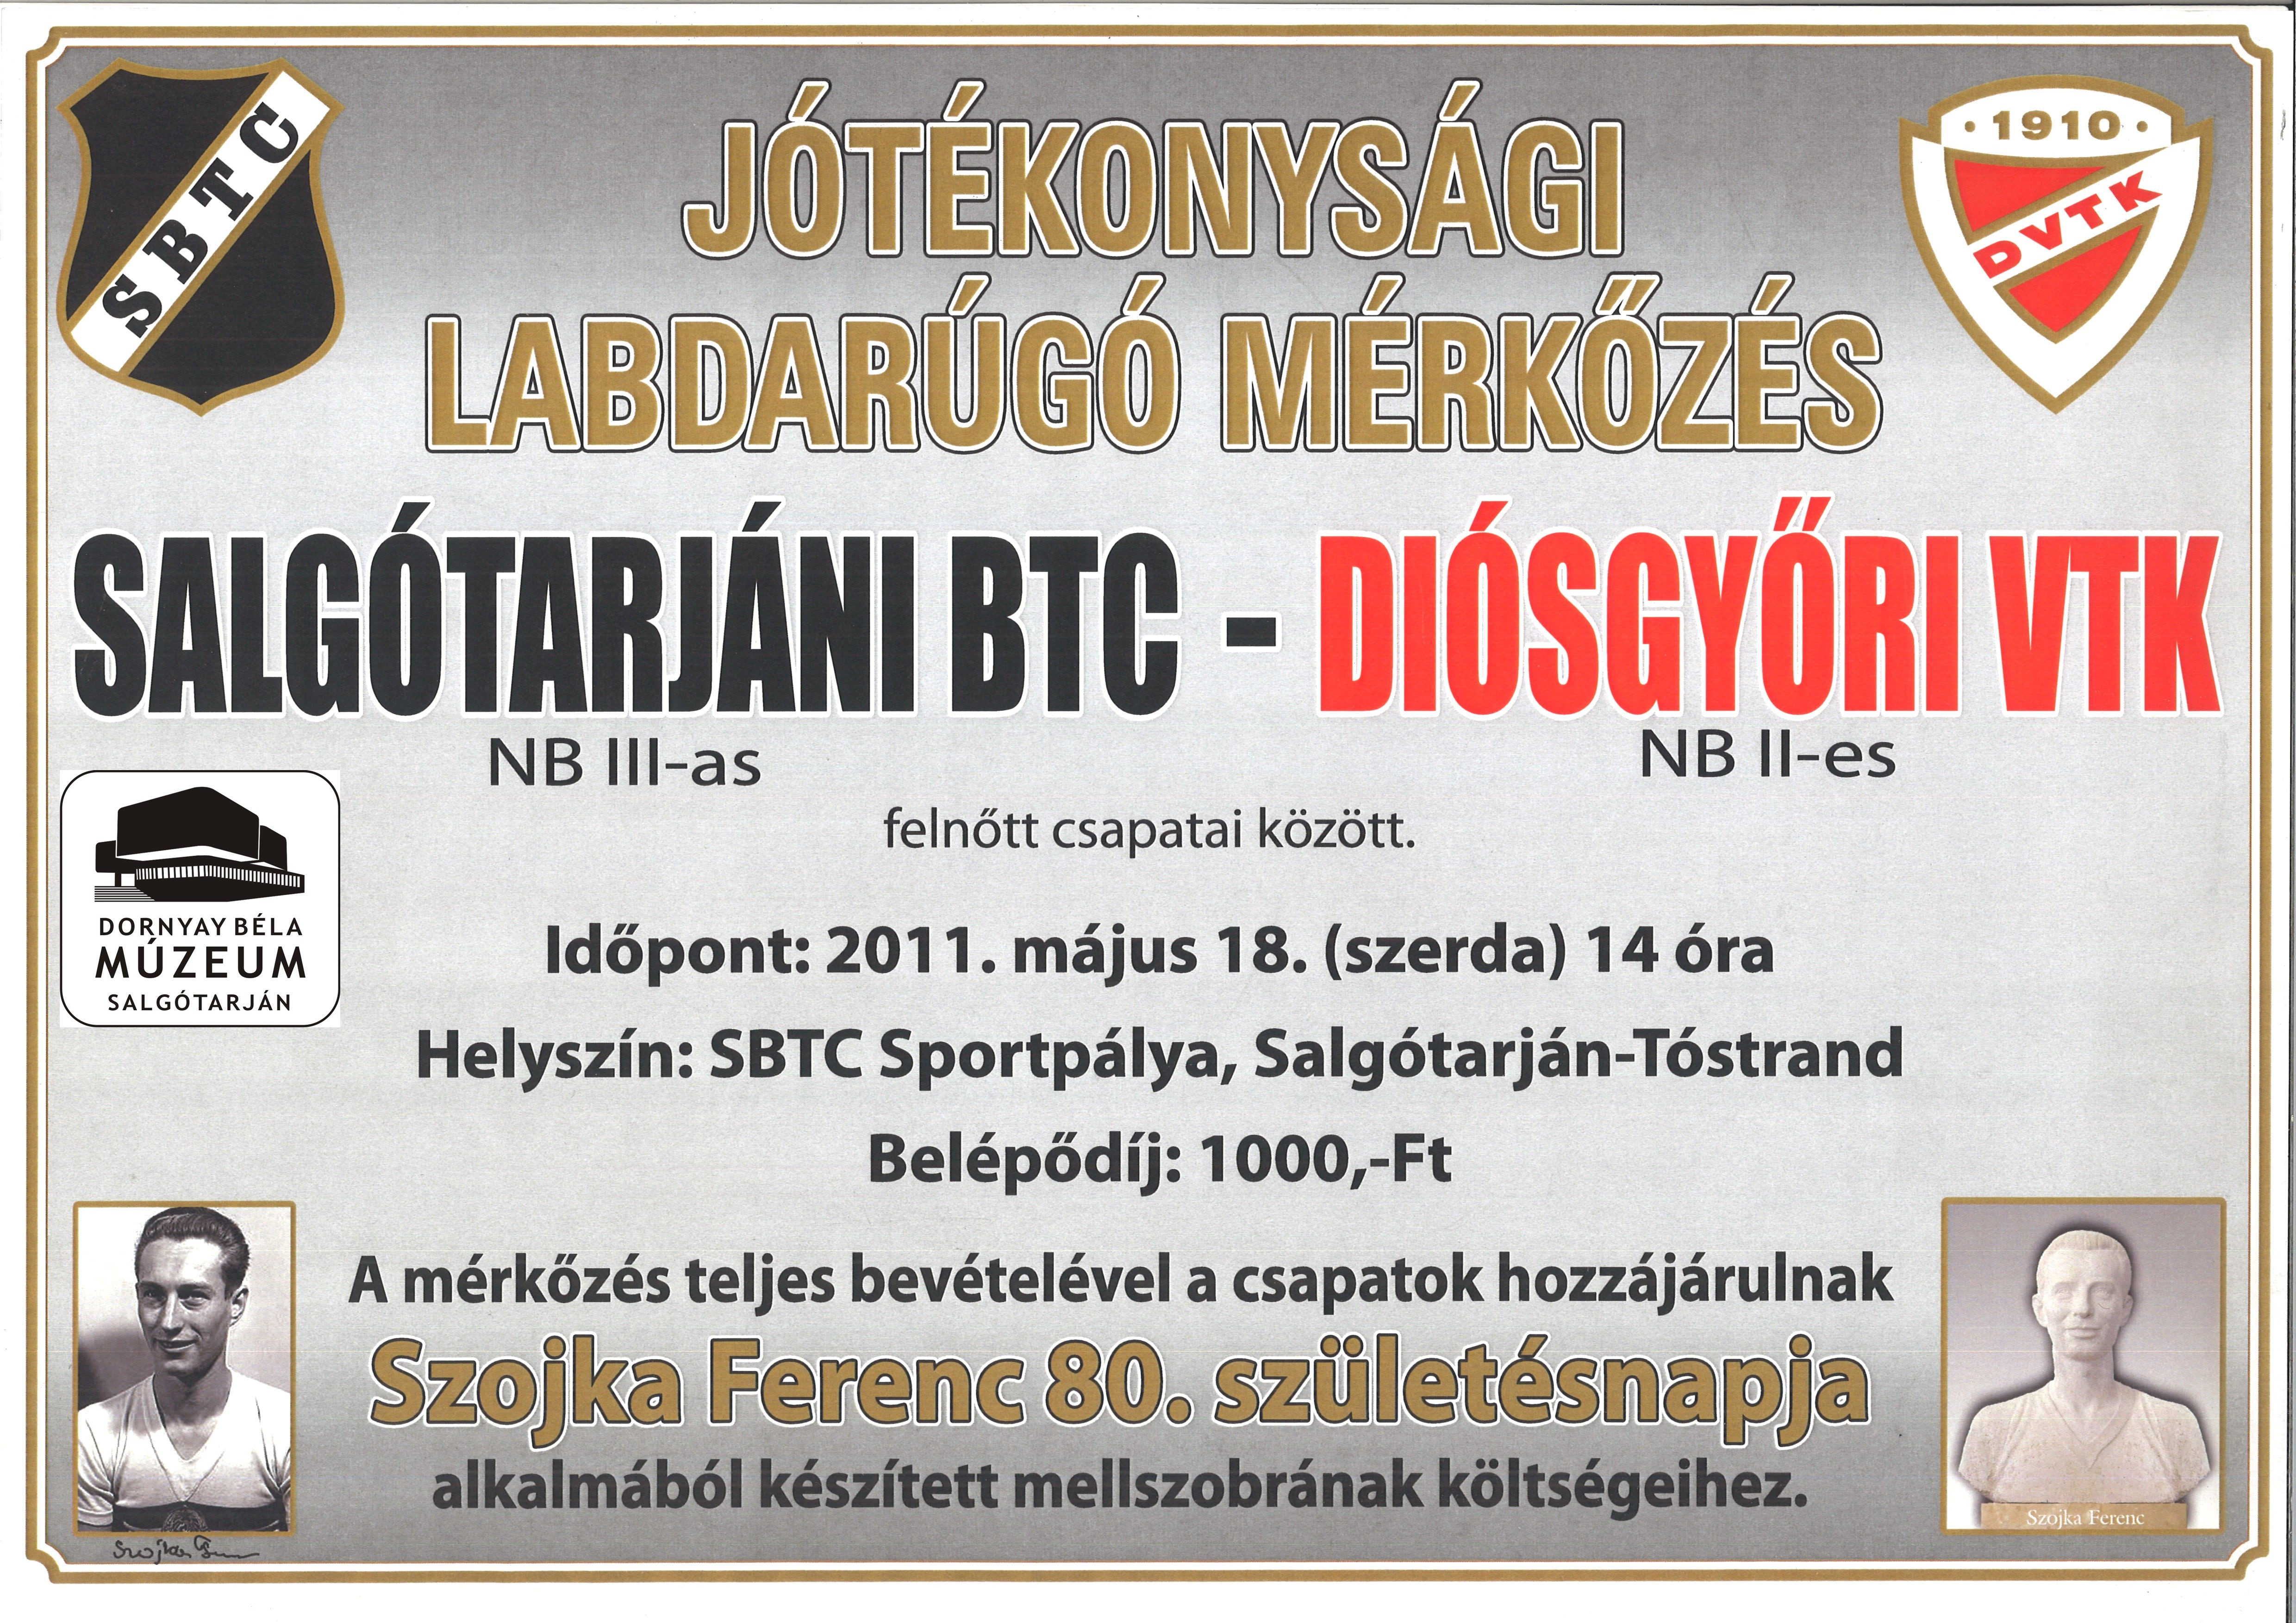 Saltótarjáni BTC - Diósgyőri VTK (Dornyay Béla Múzeum, Salgótarján CC BY-NC-SA)